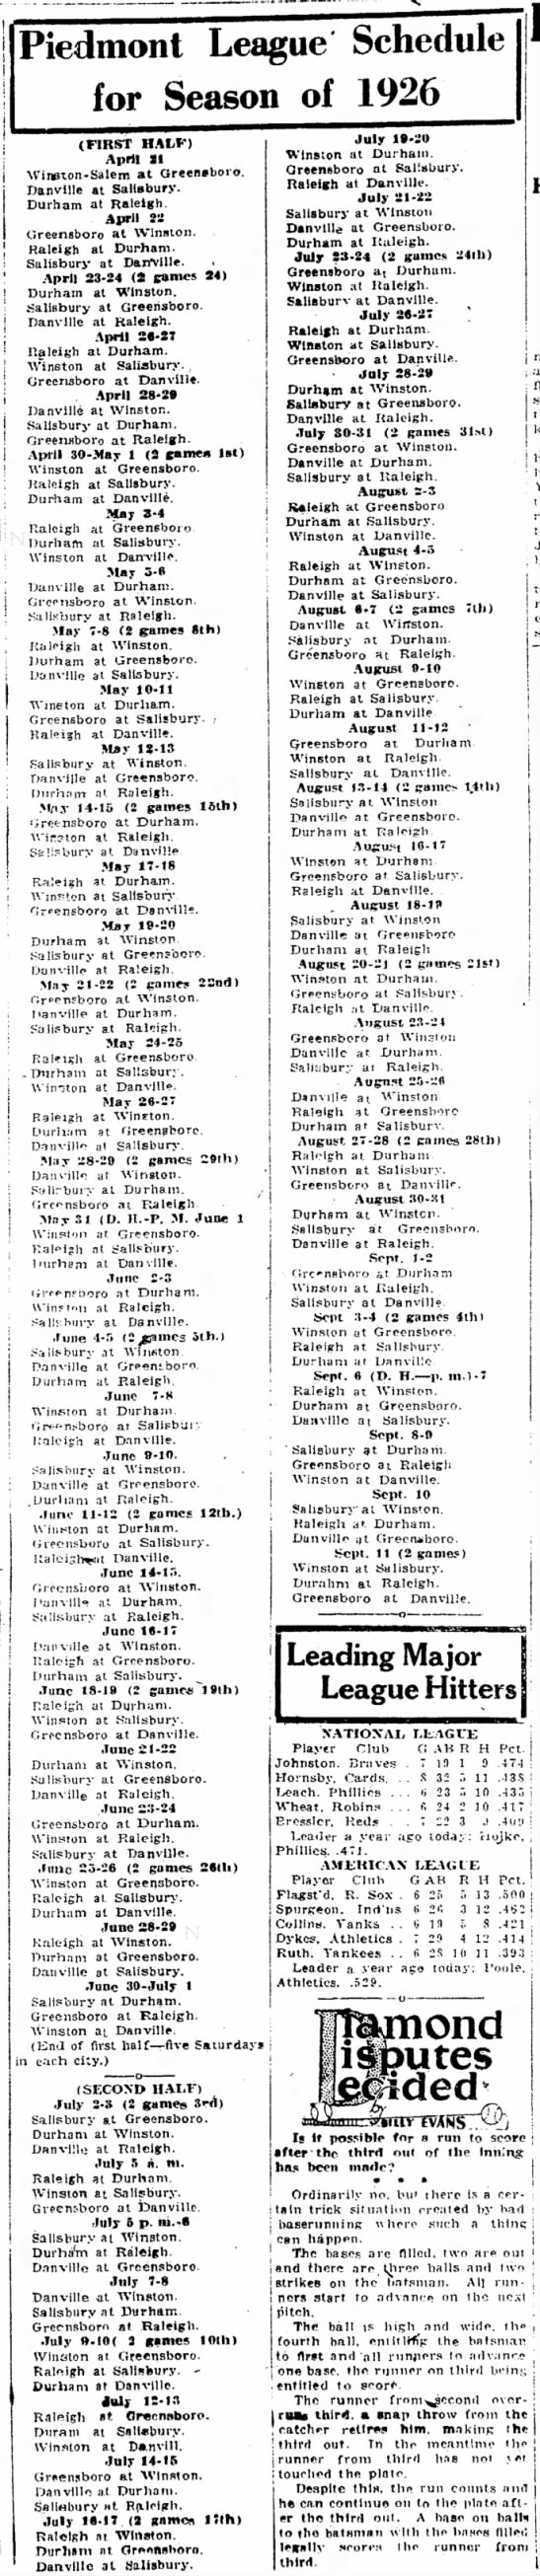 1926 Piedmont League schedule - 